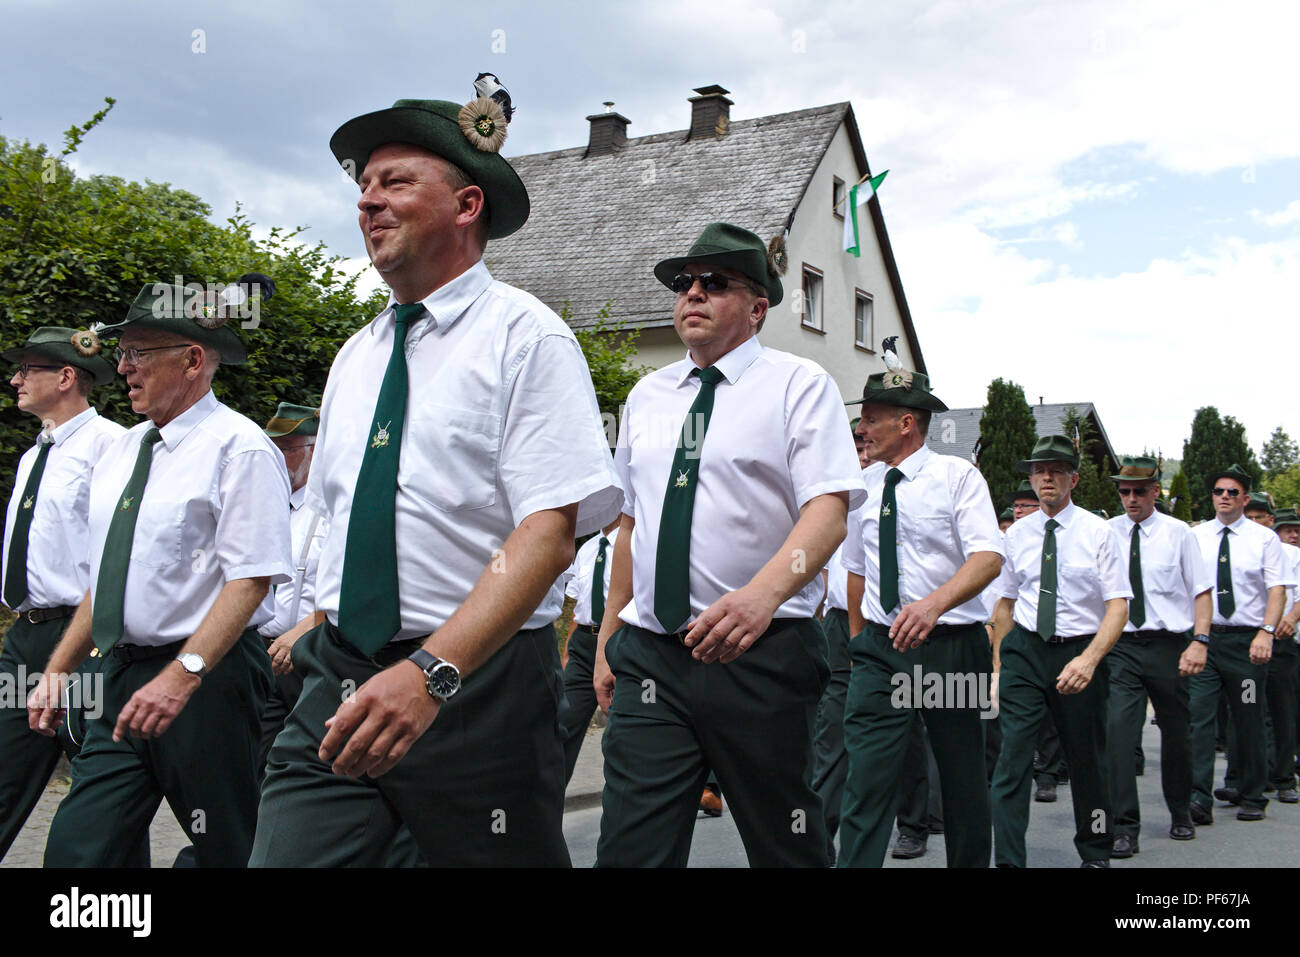 Usseln, Germania - Luglio 30th, 2018 - fucile i membri del club che sfilano in loro tradizionale di colore bianco e verde di uniformi alla tiratori giusto Foto Stock